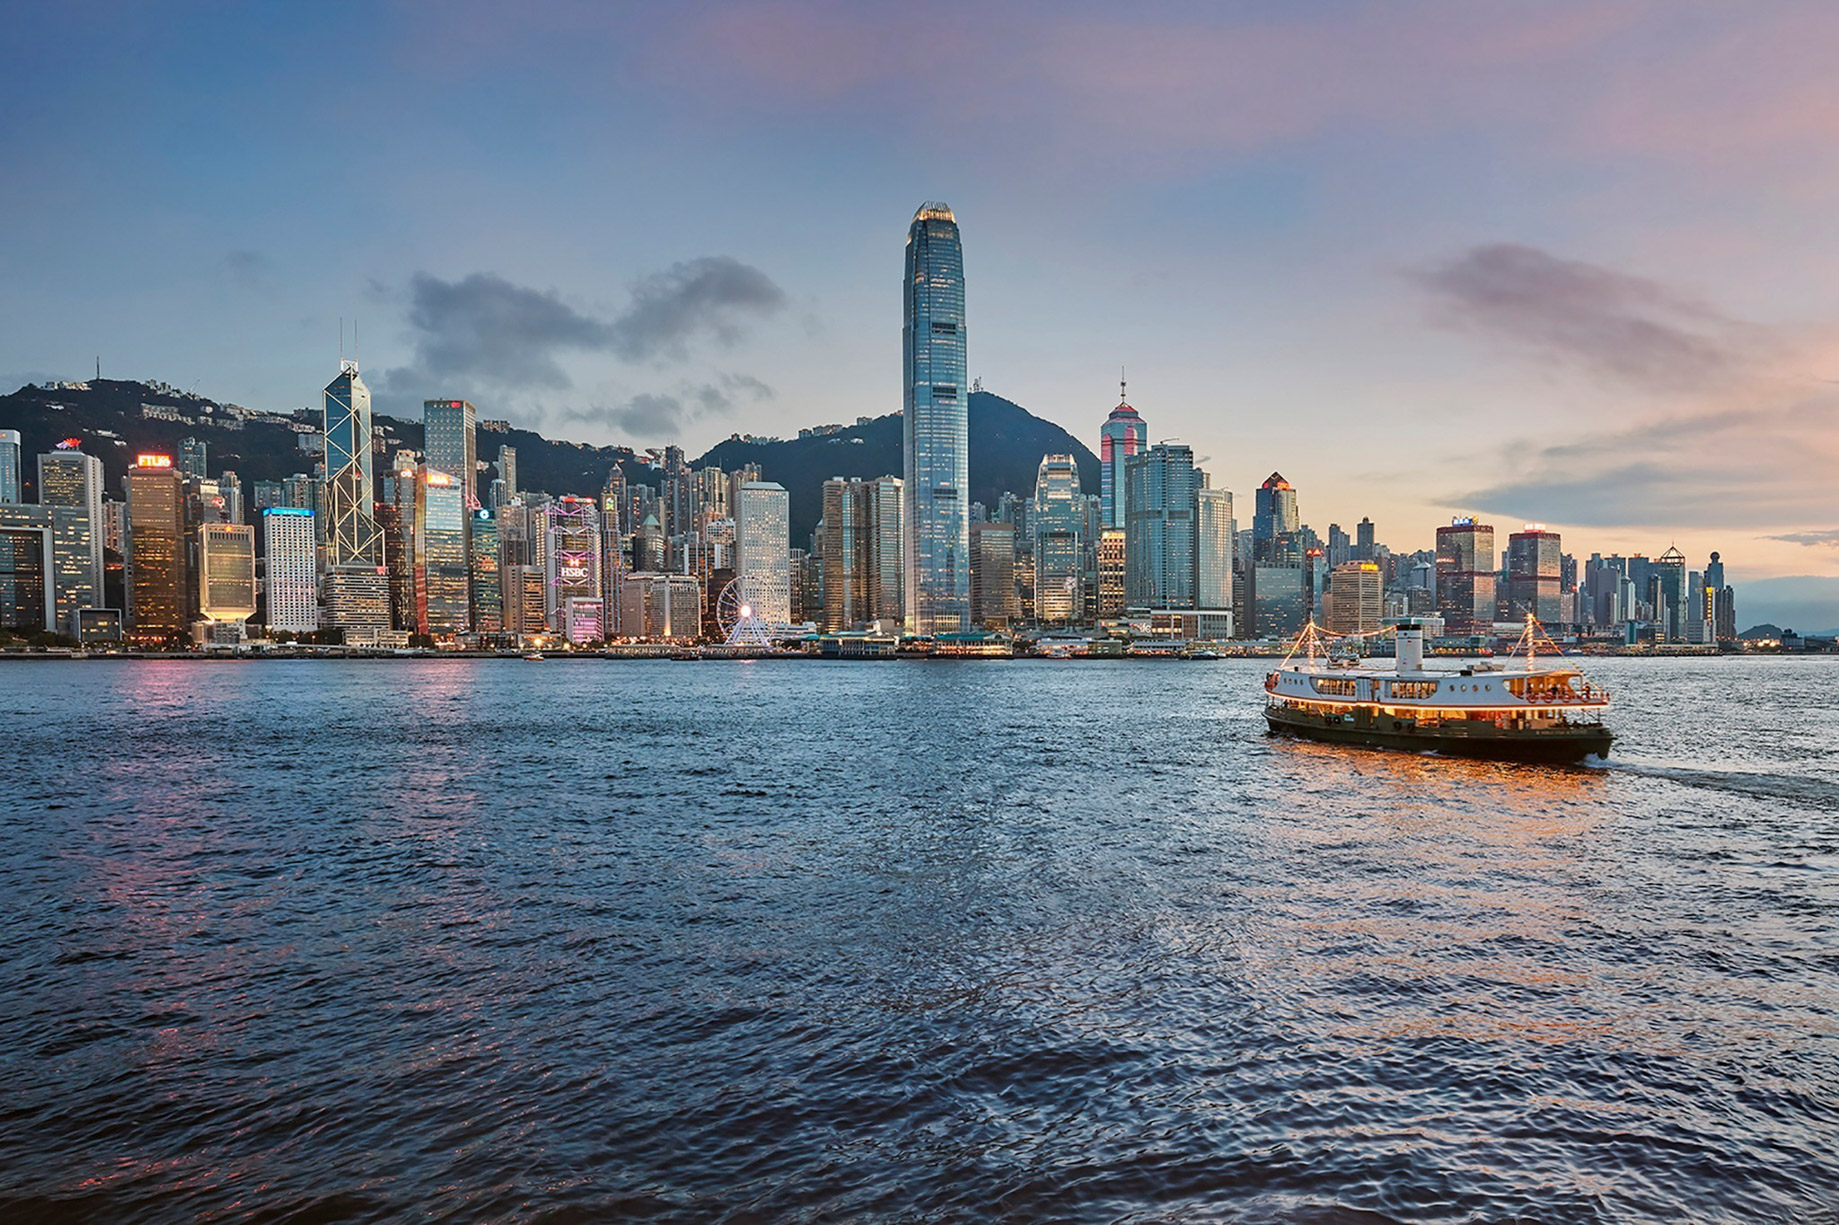 Mandarin Oriental, Hong Kong Hotel – Hong Kong, China – City View